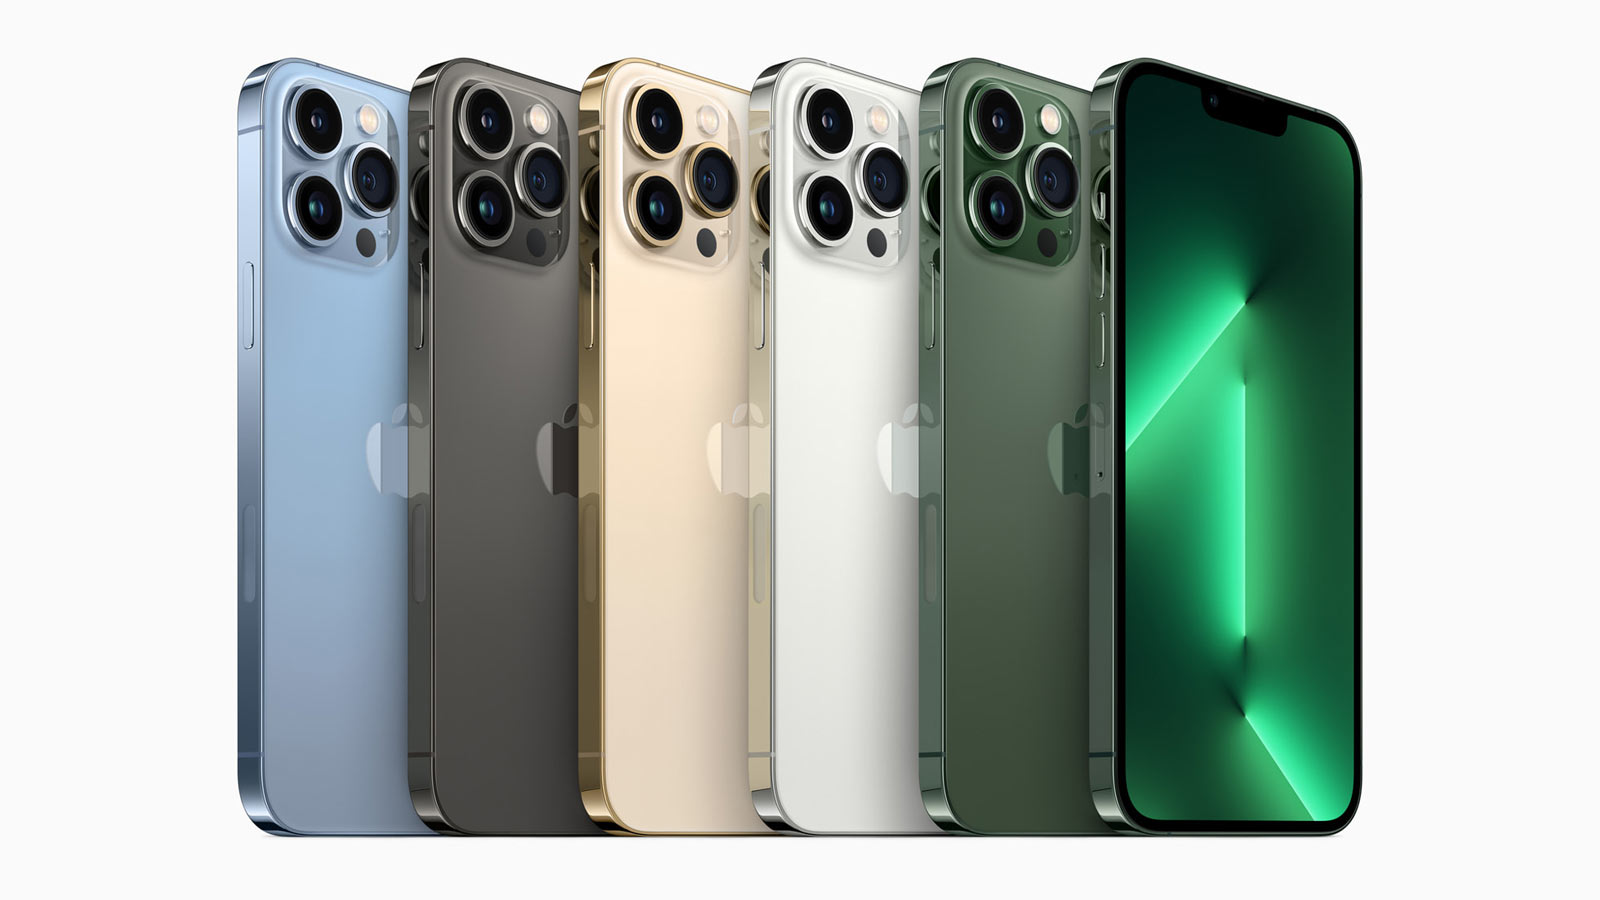 iPhone 13 màu xanh lá cây là một trong những phiên bản mới nhất của chiếc điện thoại đình đám của Apple. Với bộ vi xử lí mạnh mẽ, màn hình đẹp và thiết kế tinh tế, iPhone 13 màu xanh lá cây sẽ là sự lựa chọn hoàn hảo cho những ai yêu thích màu xanh. Hãy xem hình ảnh liên quan để tìm hiểu thêm về sản phẩm này.